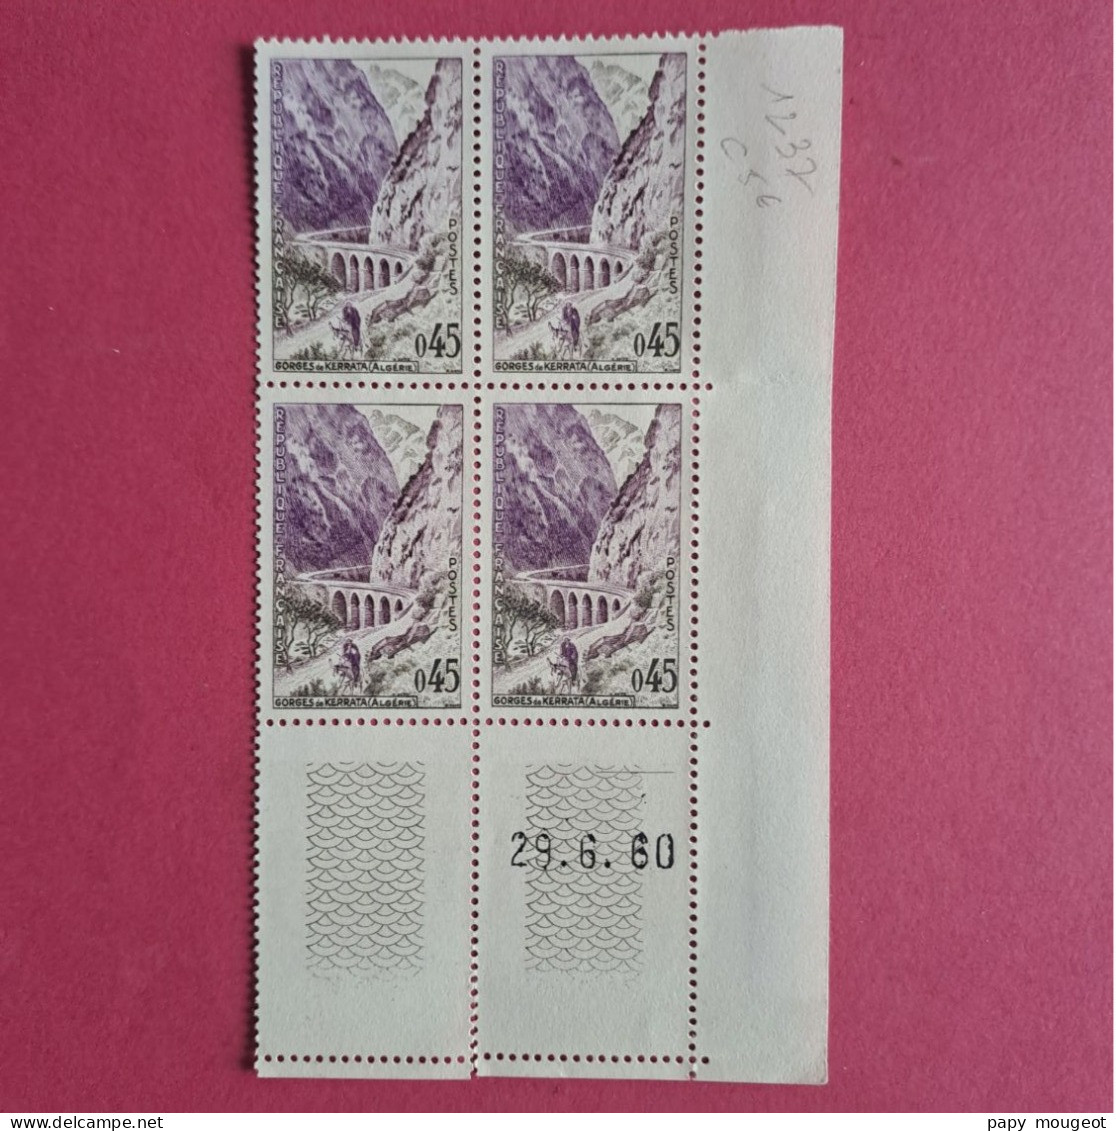 N°1237 0.45 Gorges De Kerrata (Algérie) -  29.6.60 Neuf ** Cote 2024 5€ - 1960-1969